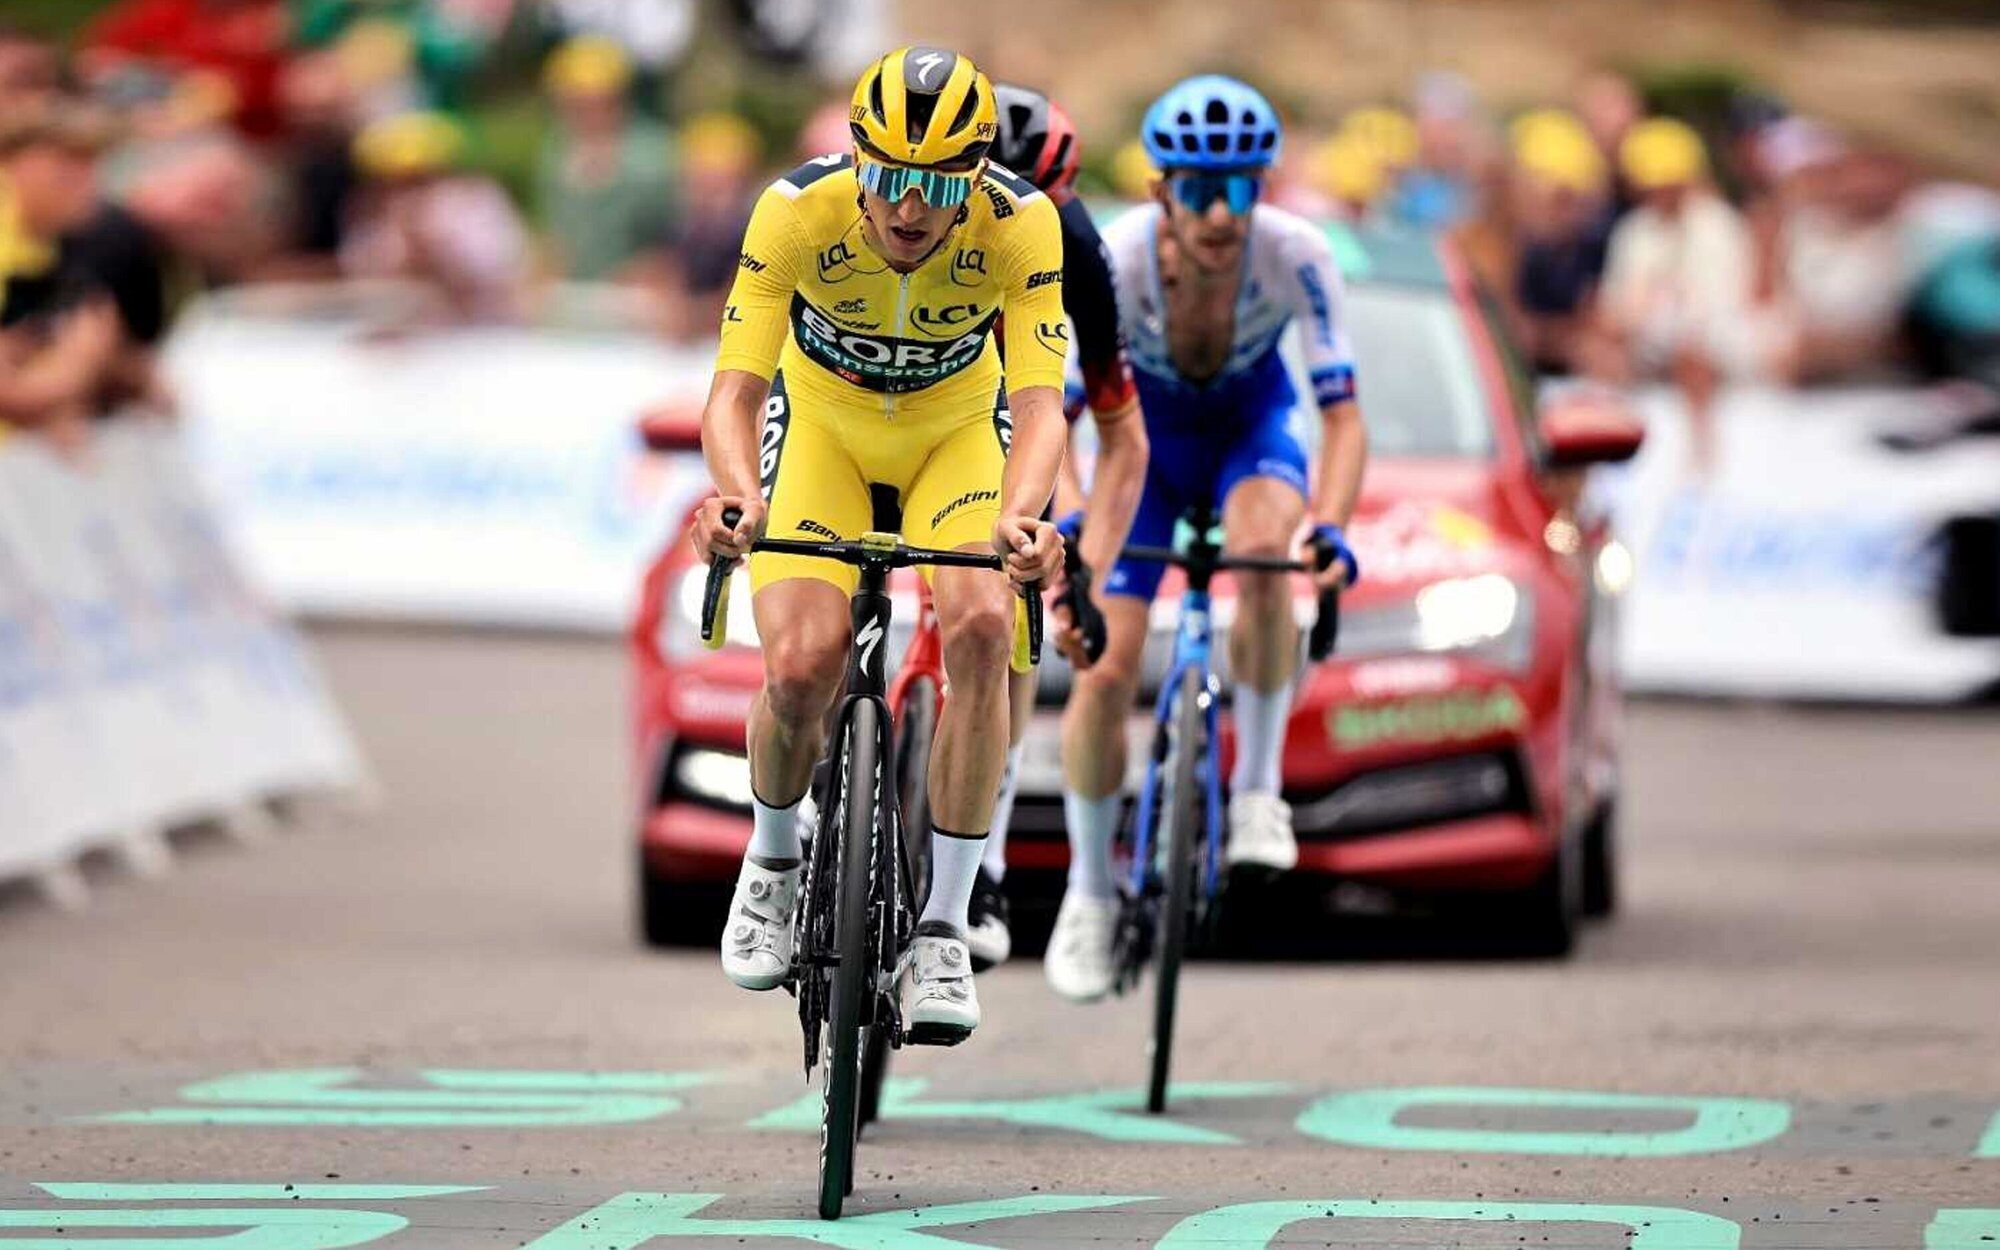 FDF le arrebata el liderazgo a Energy y TDP consigue la emisión más vista con el Tour de Francia